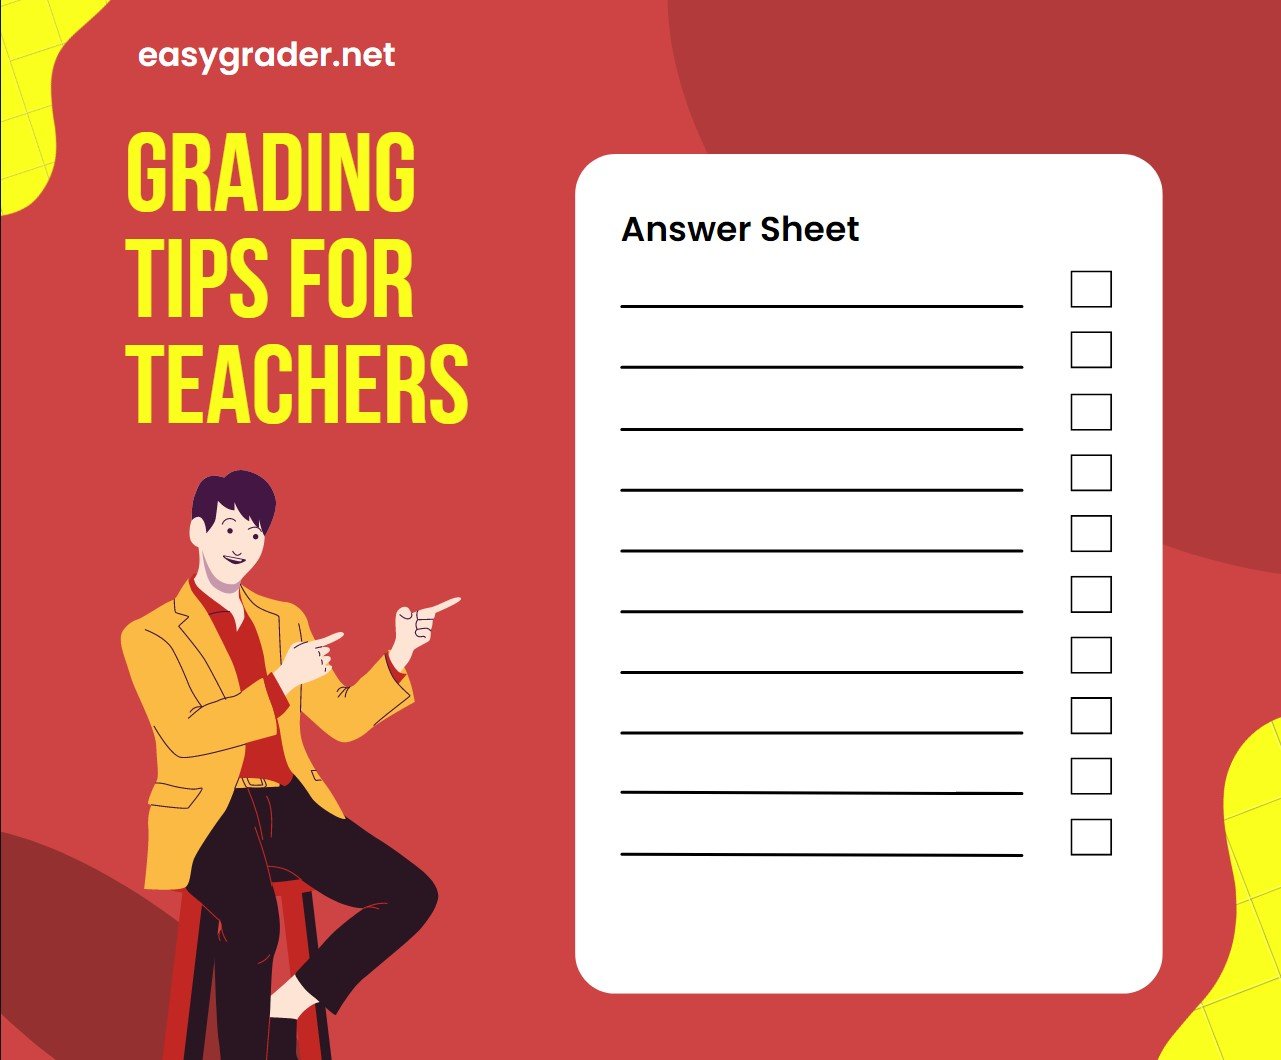 Grading Tips for Teachers